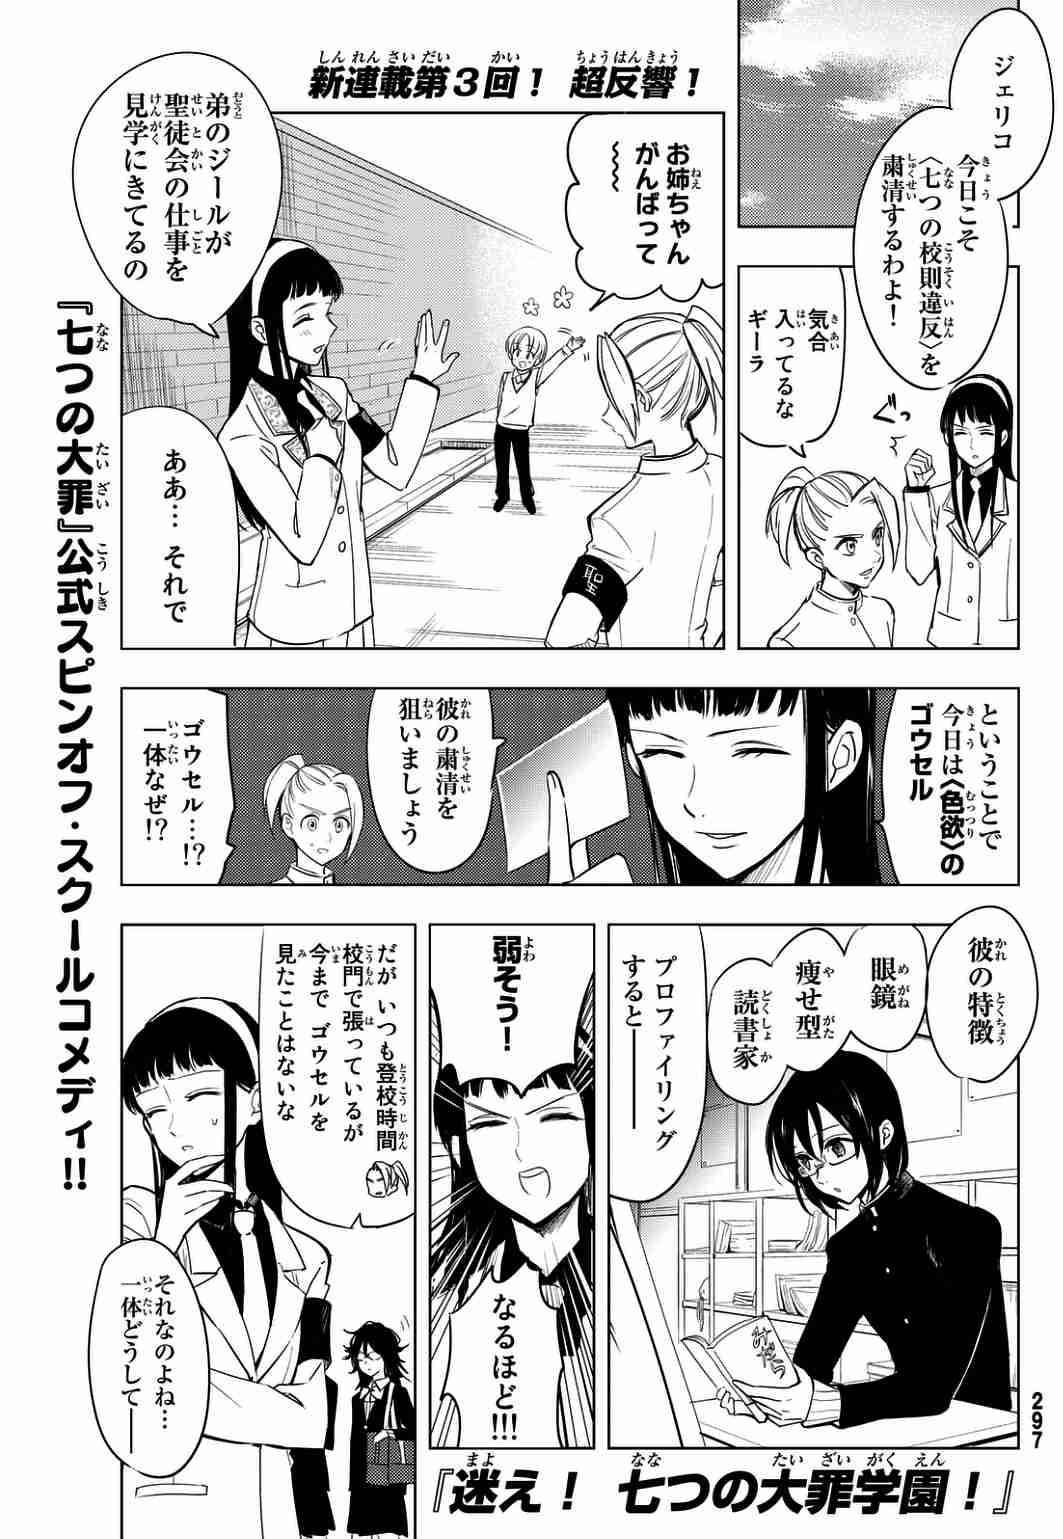 迷え 七つの大罪学園 3話 Manga Townまんがタウン まんがまとめ 無料コミック漫画 ネタバレ